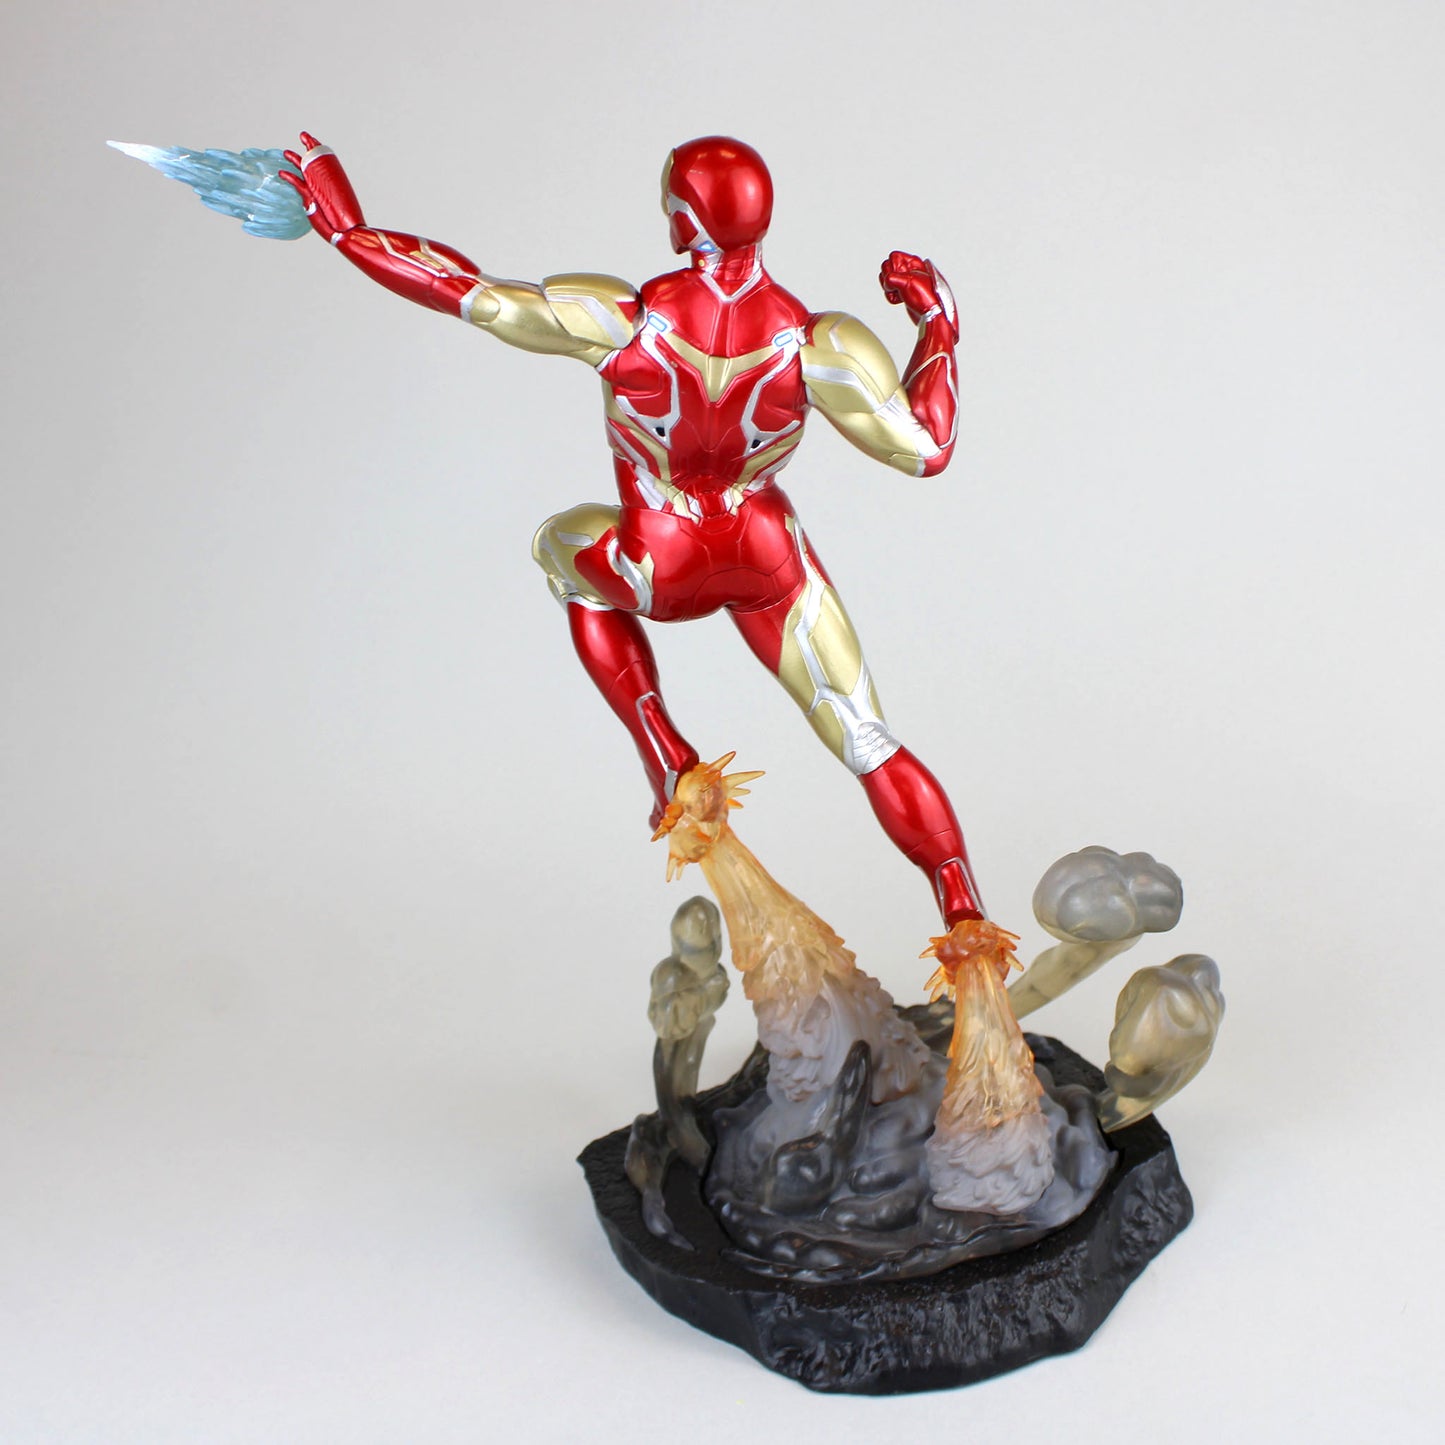 Iron Man Mk 85 Endgame Gallery Statue